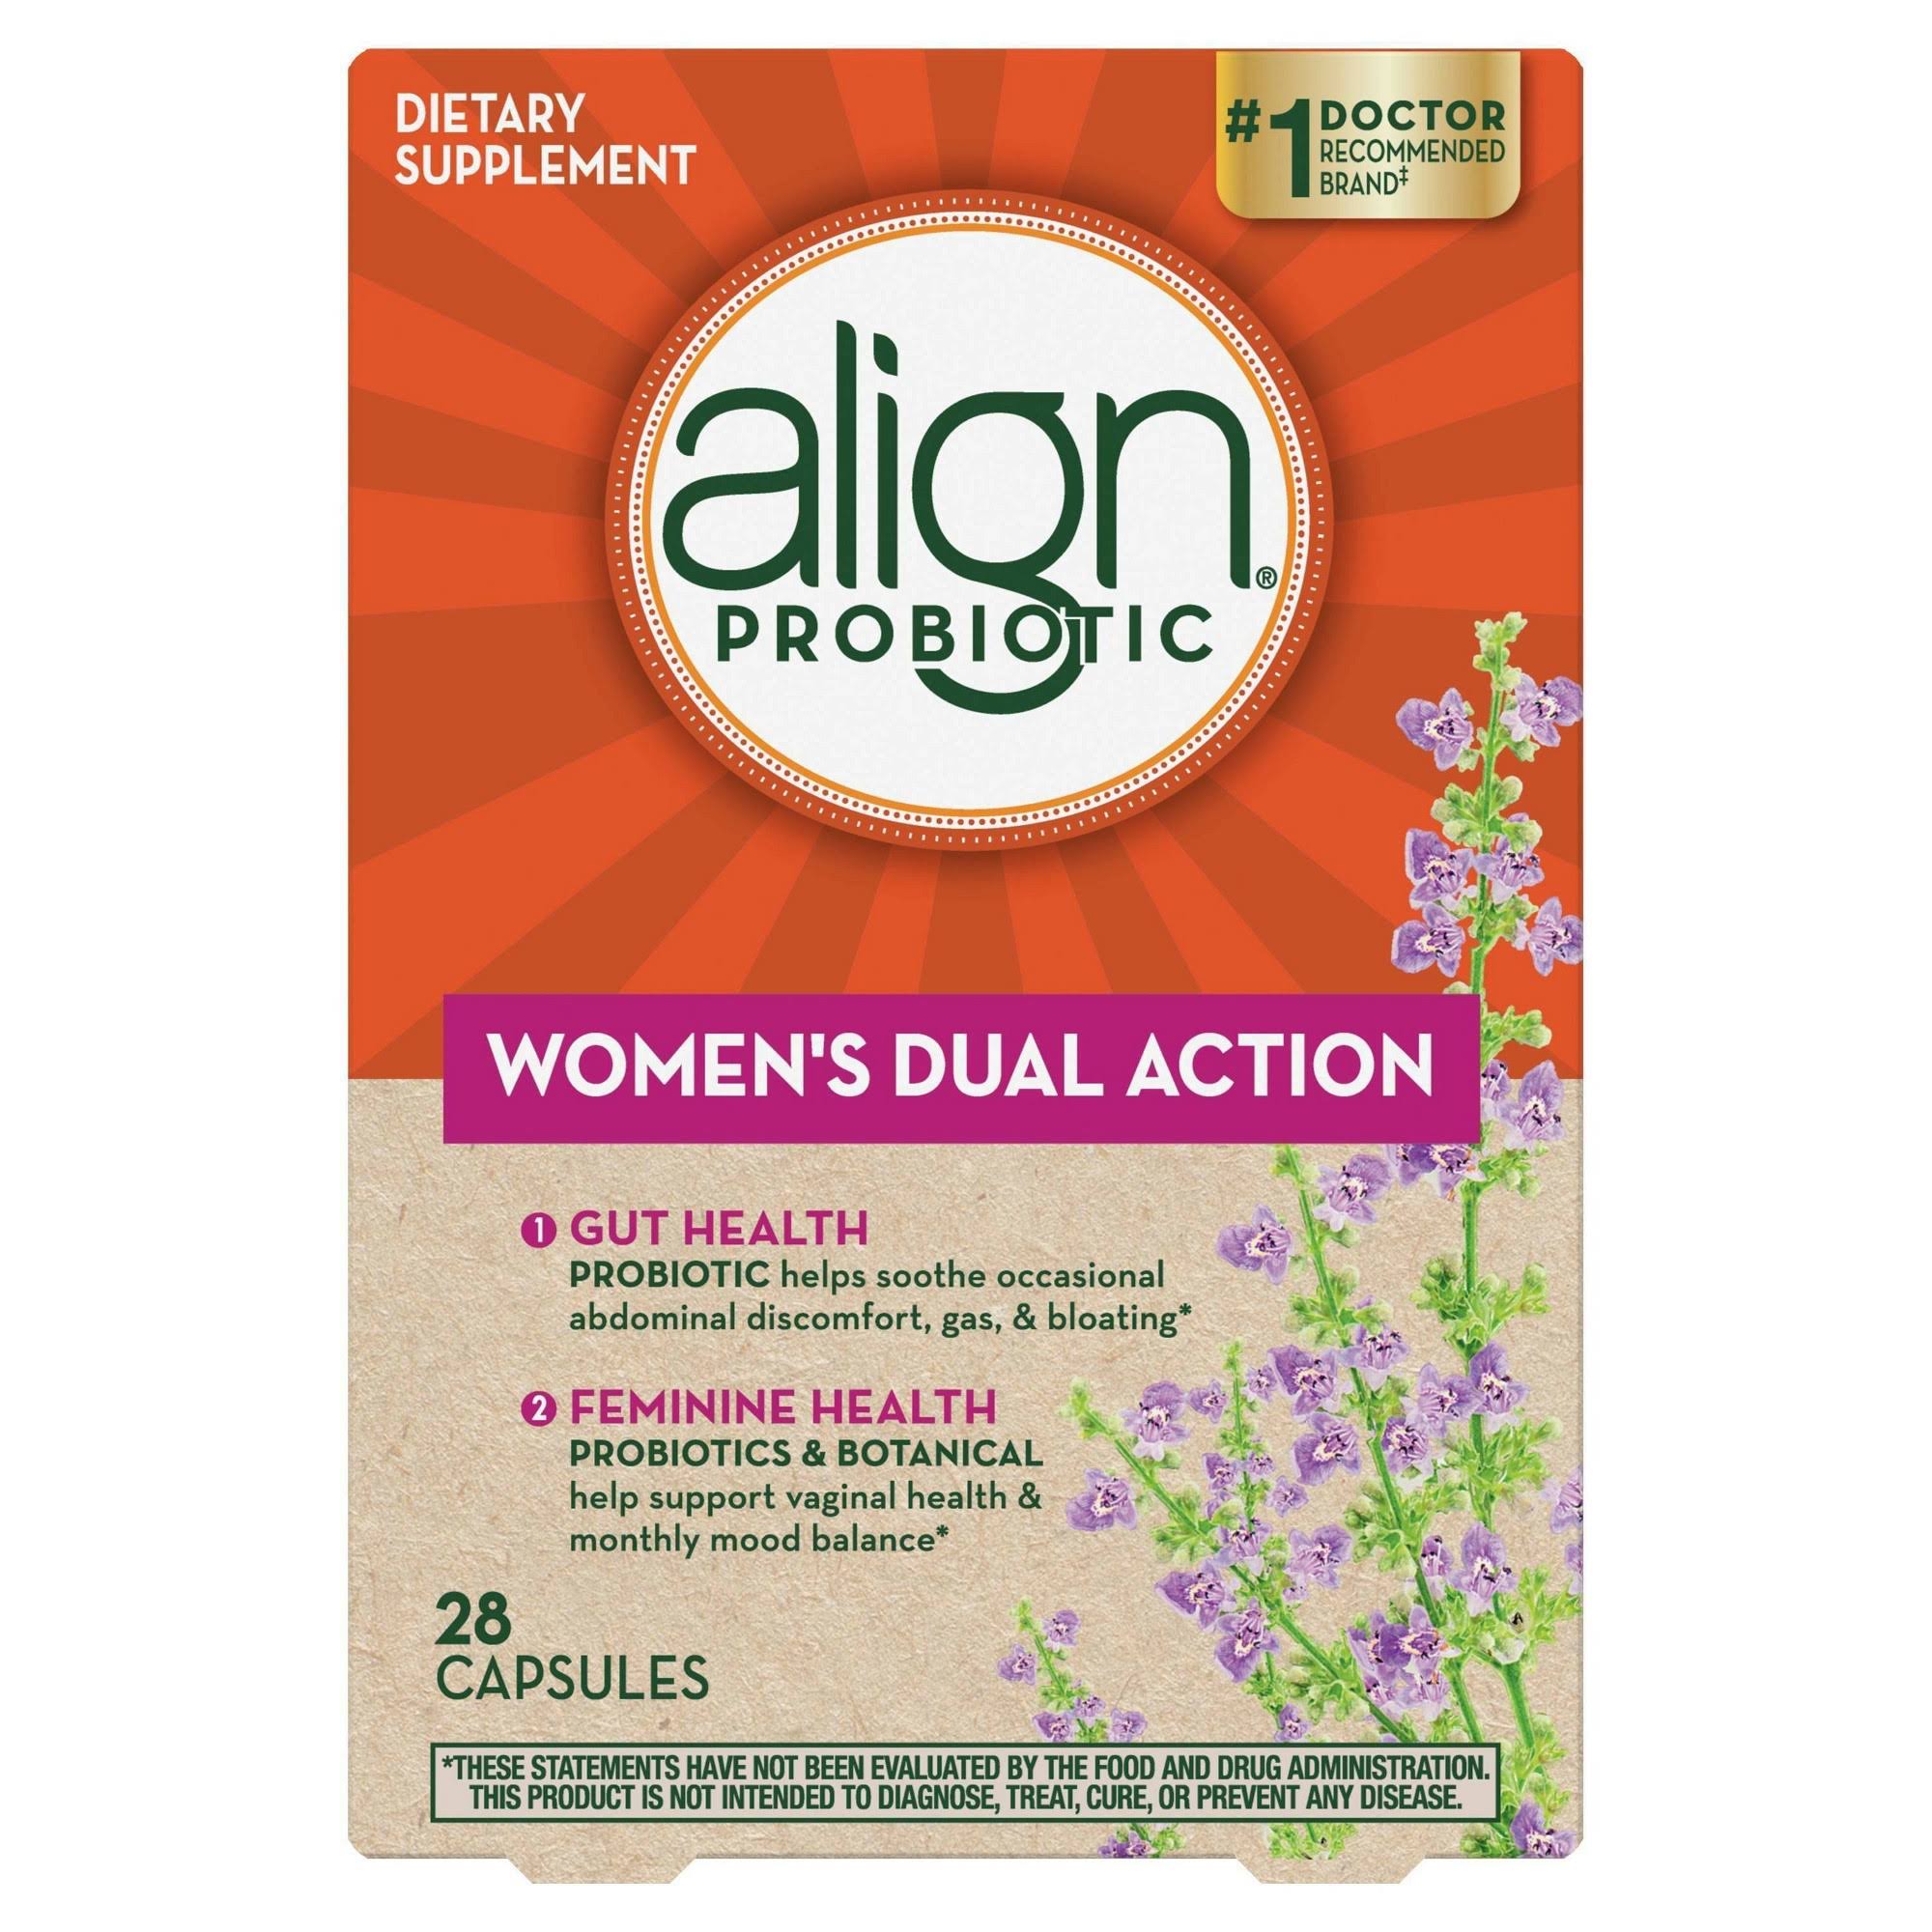 Align Probiotic Women's Dual Action, Capsules - 28 capsules